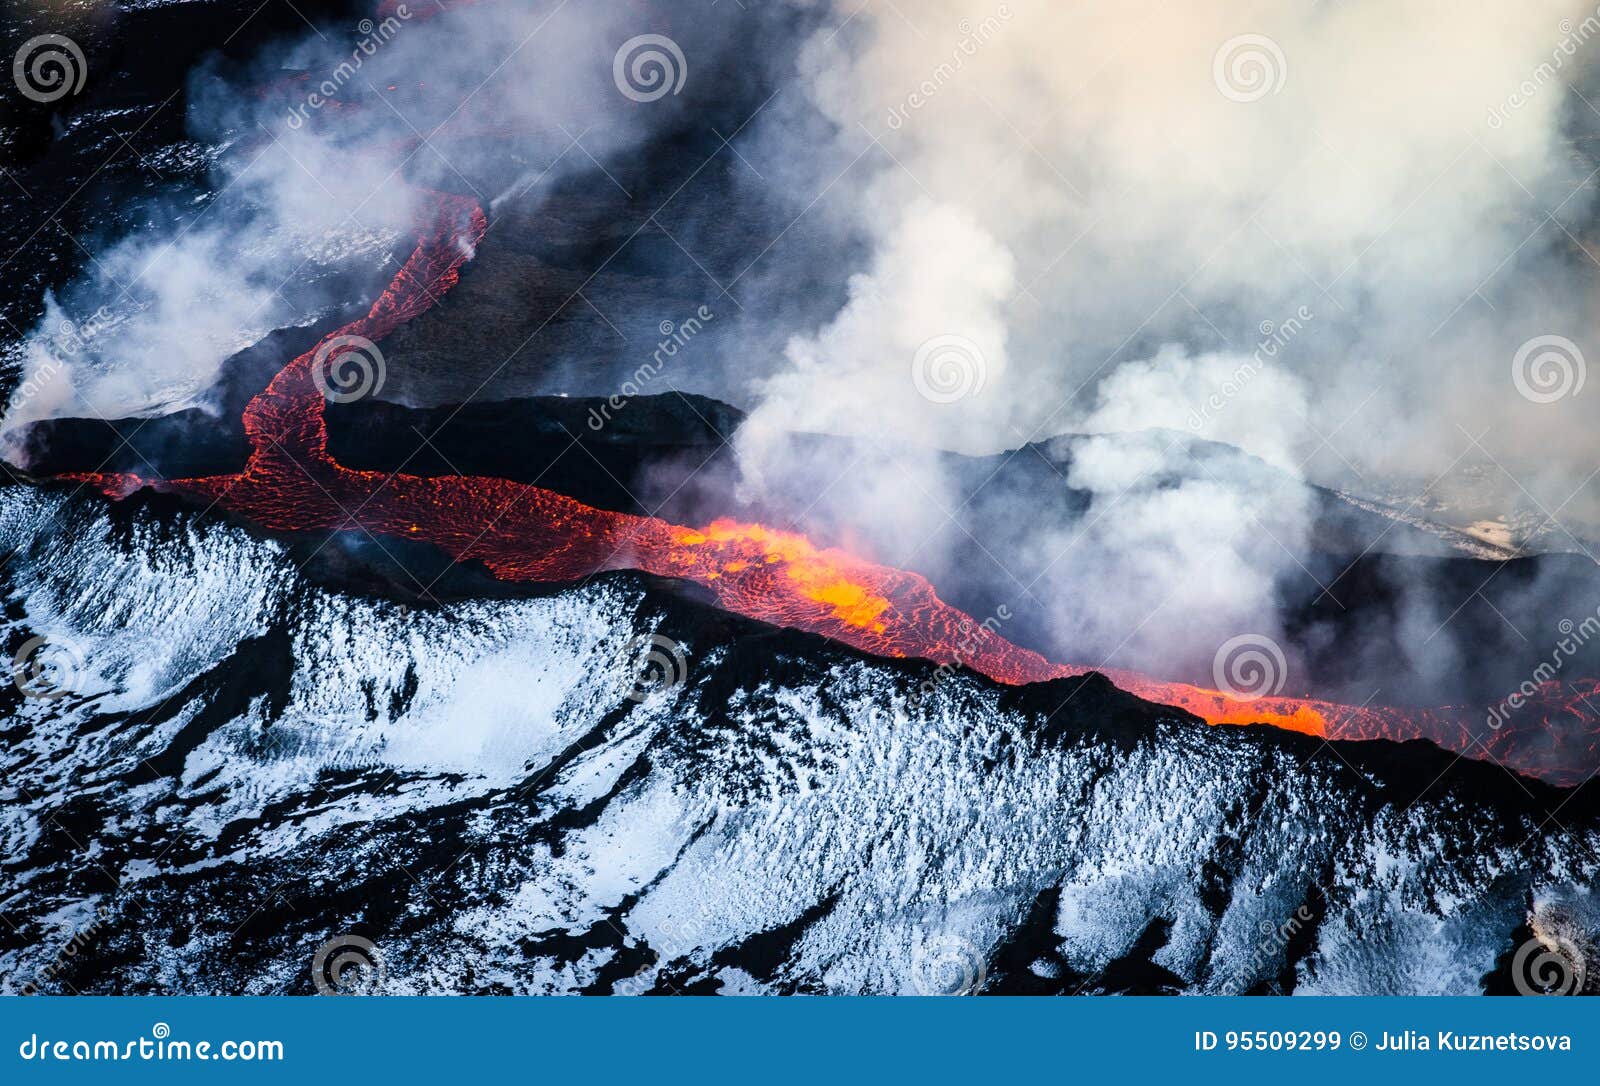 erupting volcano in iceland